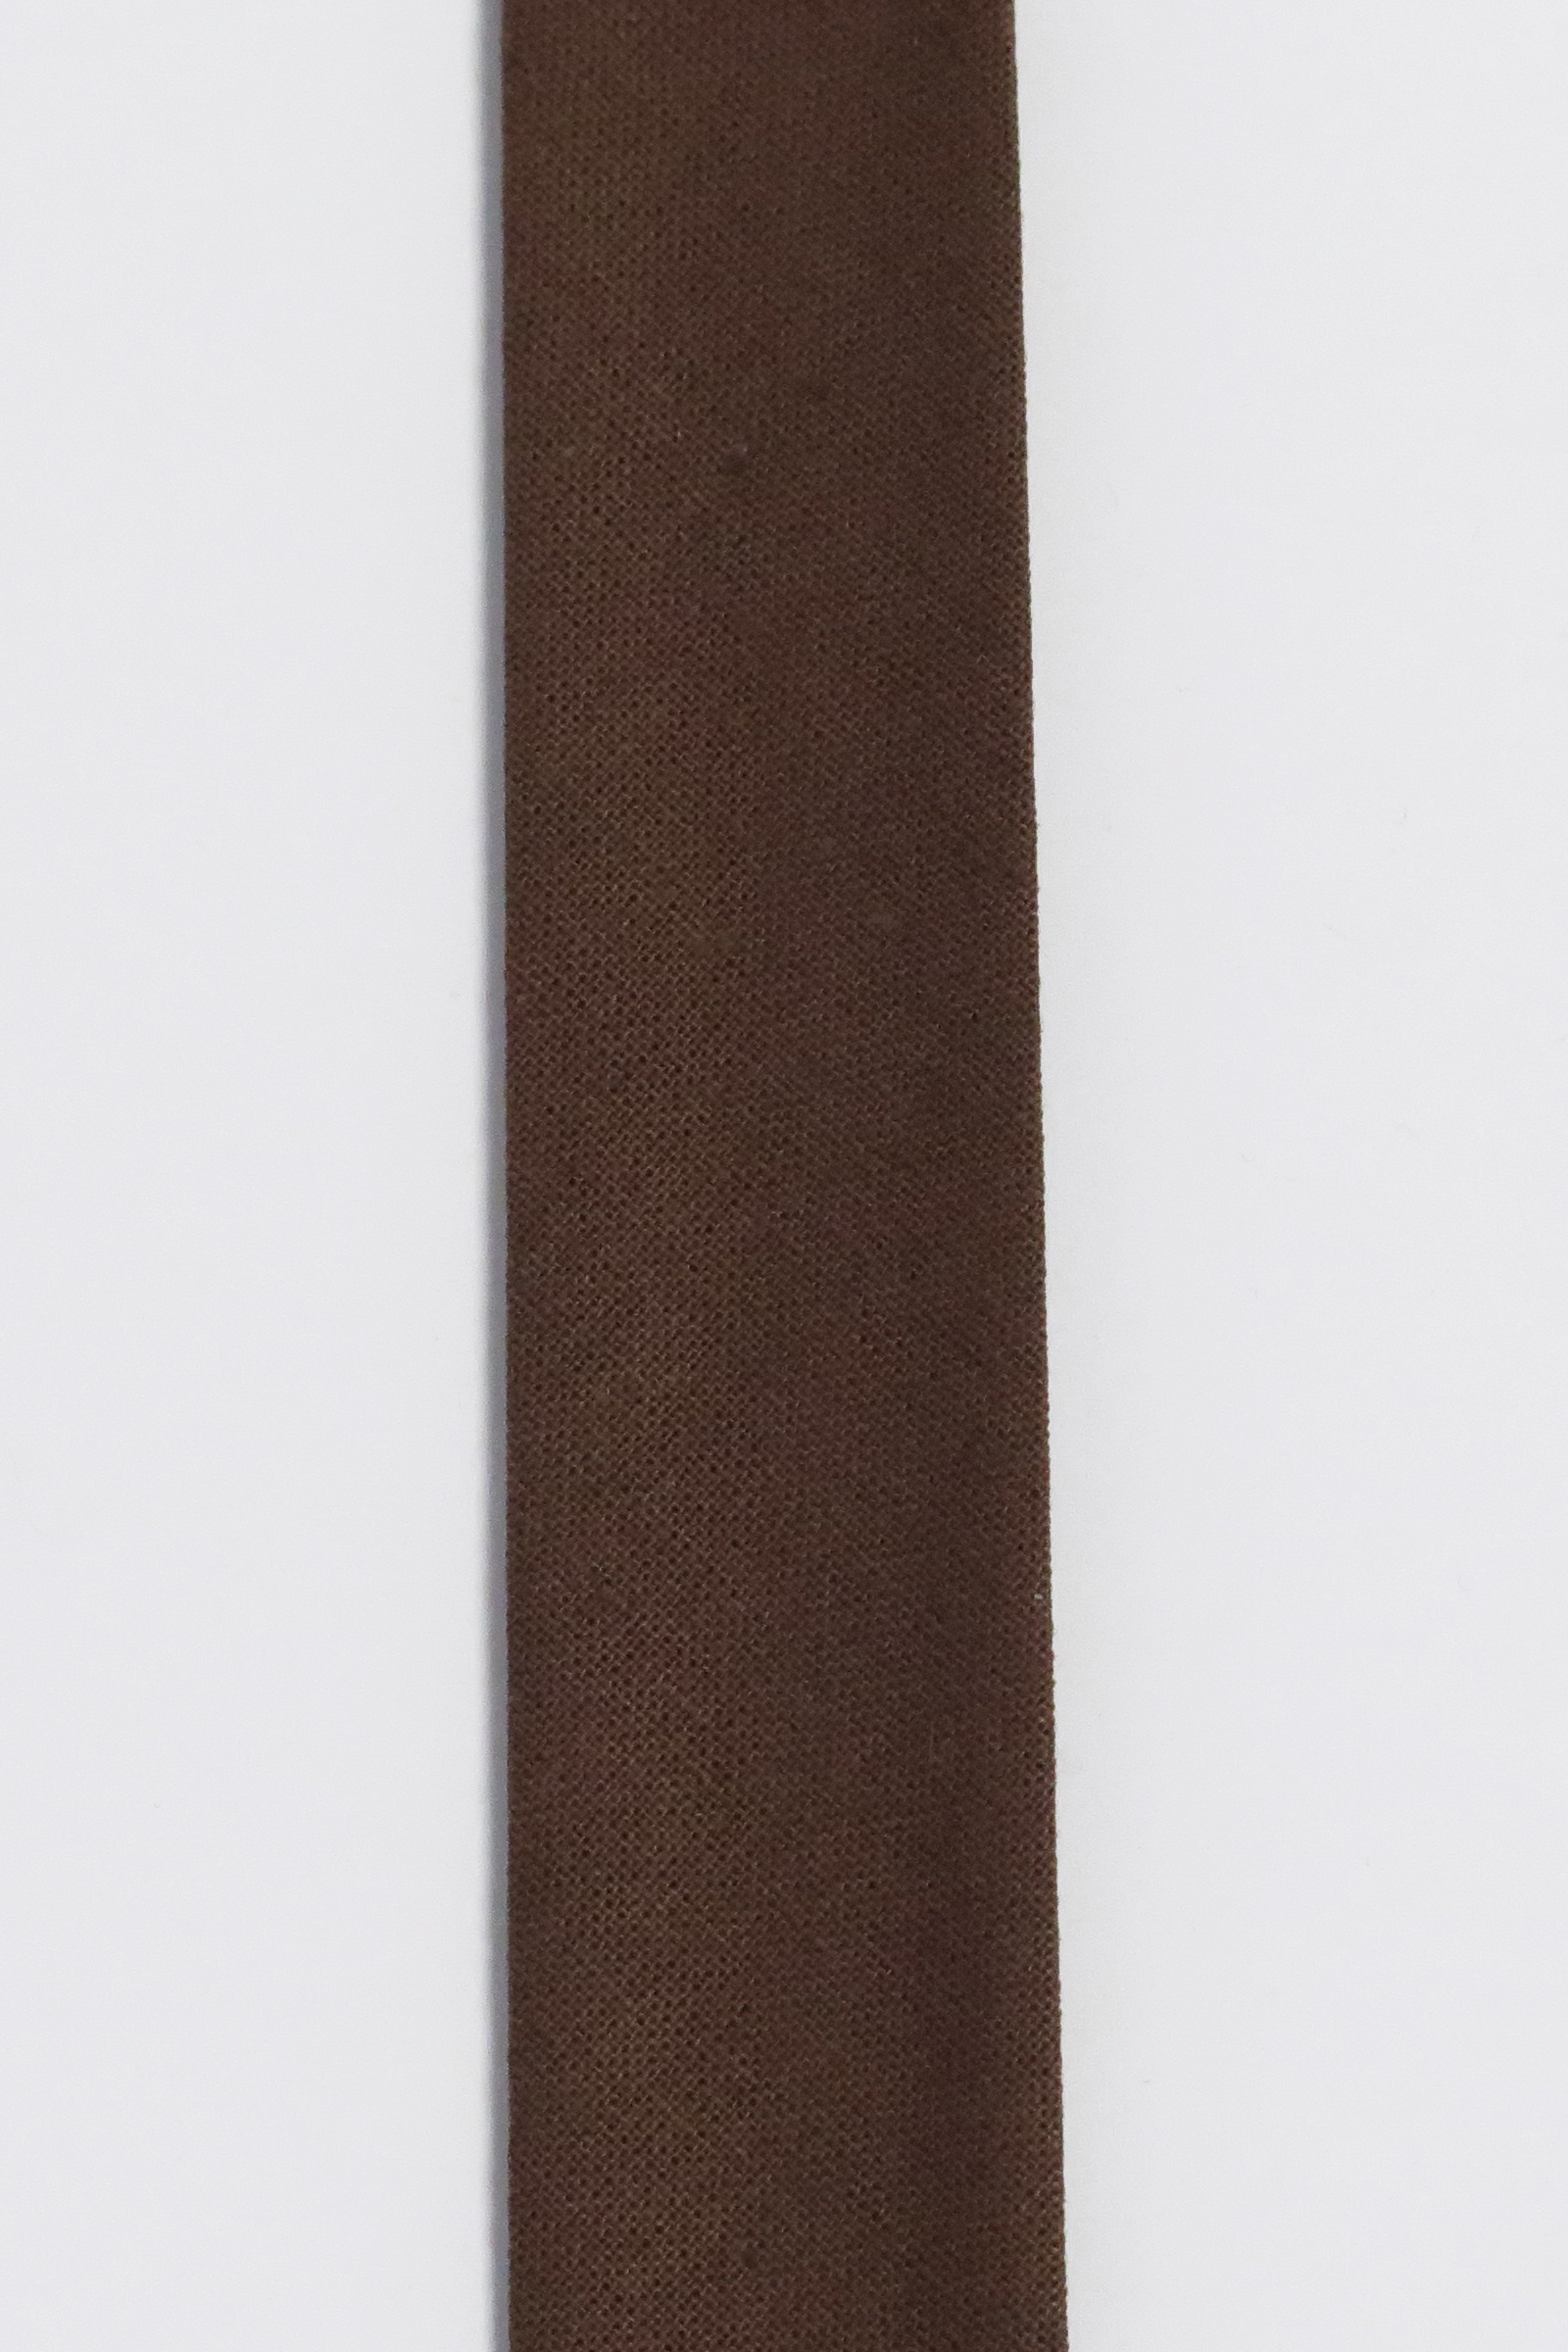 Kantbånd/Skråbånd Bomuld 20 mm Bredde Fv 4187 Chokolade Brun